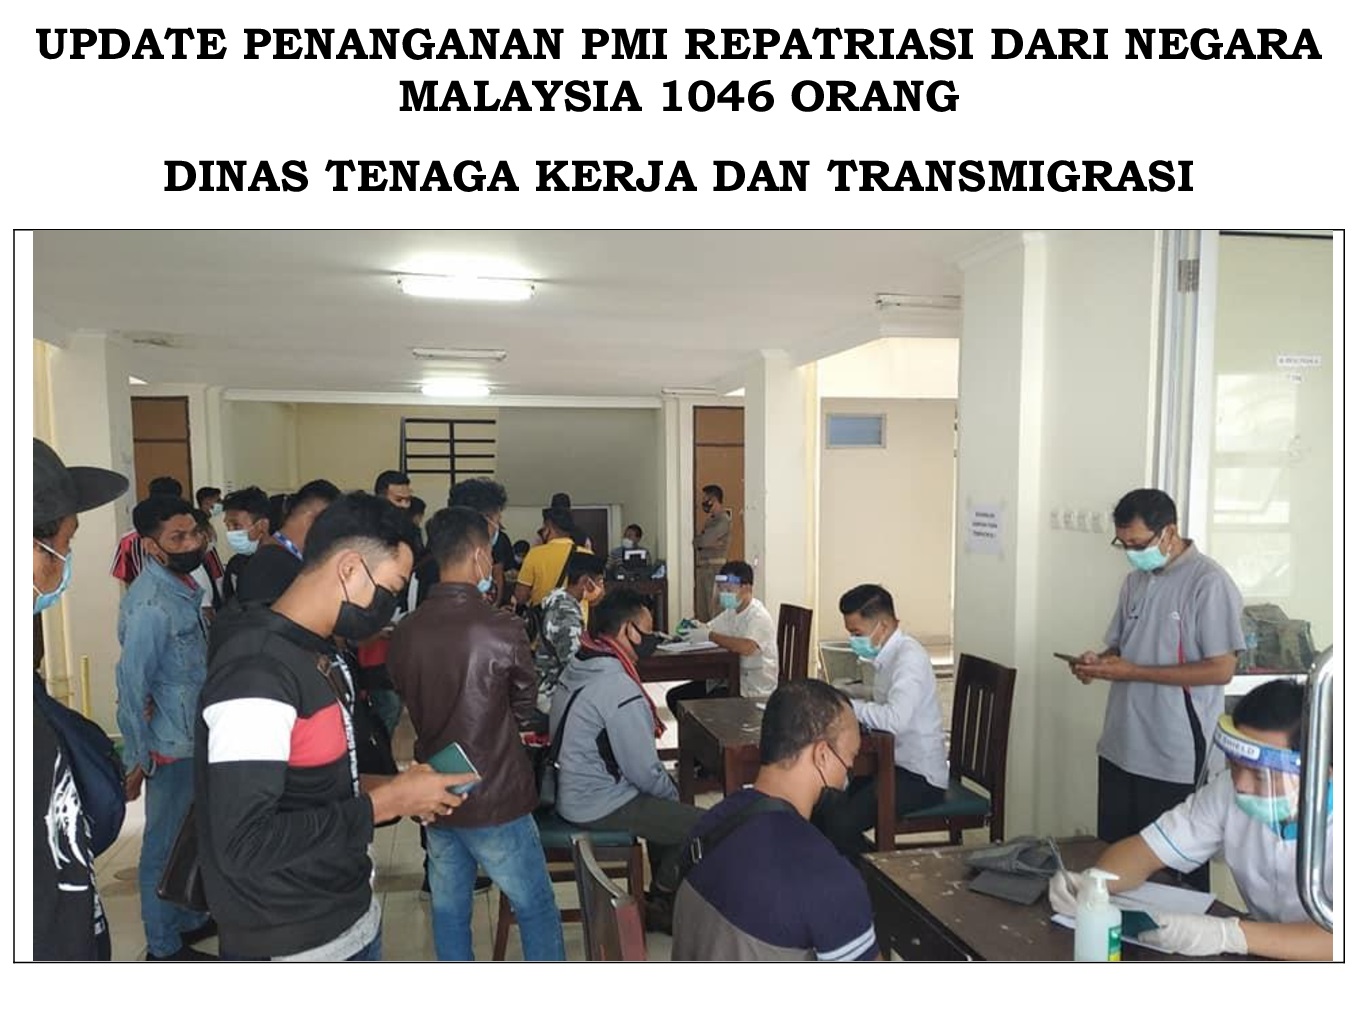 Update !! Penanganan PMI Repatriasi dari Negara Malaysia 1046 Orang.